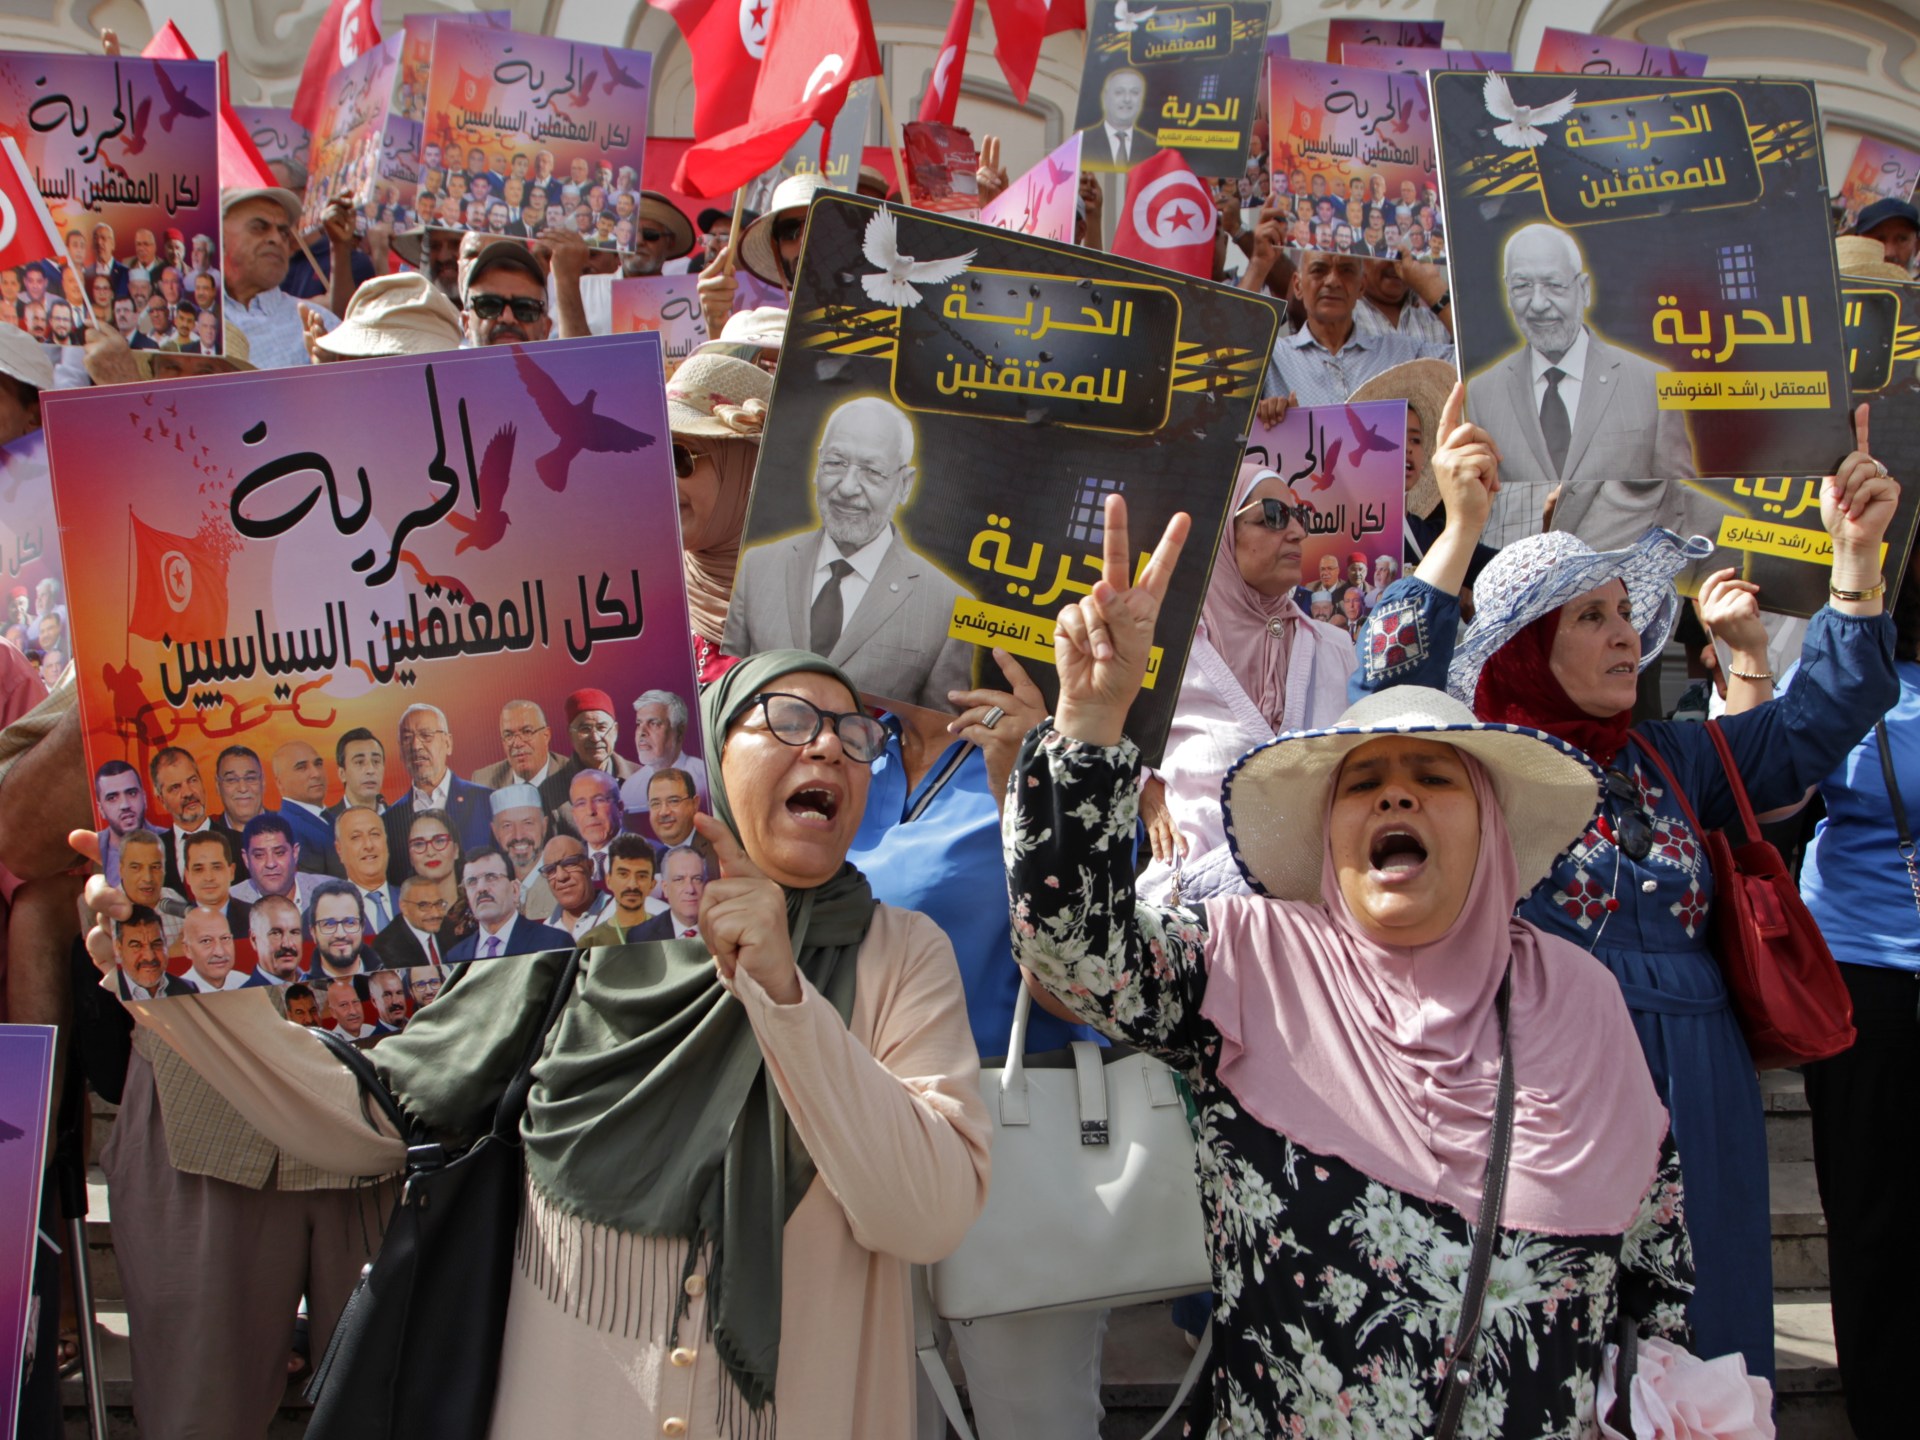 Protes Tunisia menandai dua tahun sejak pengambilalihan presiden |  Berita Protes